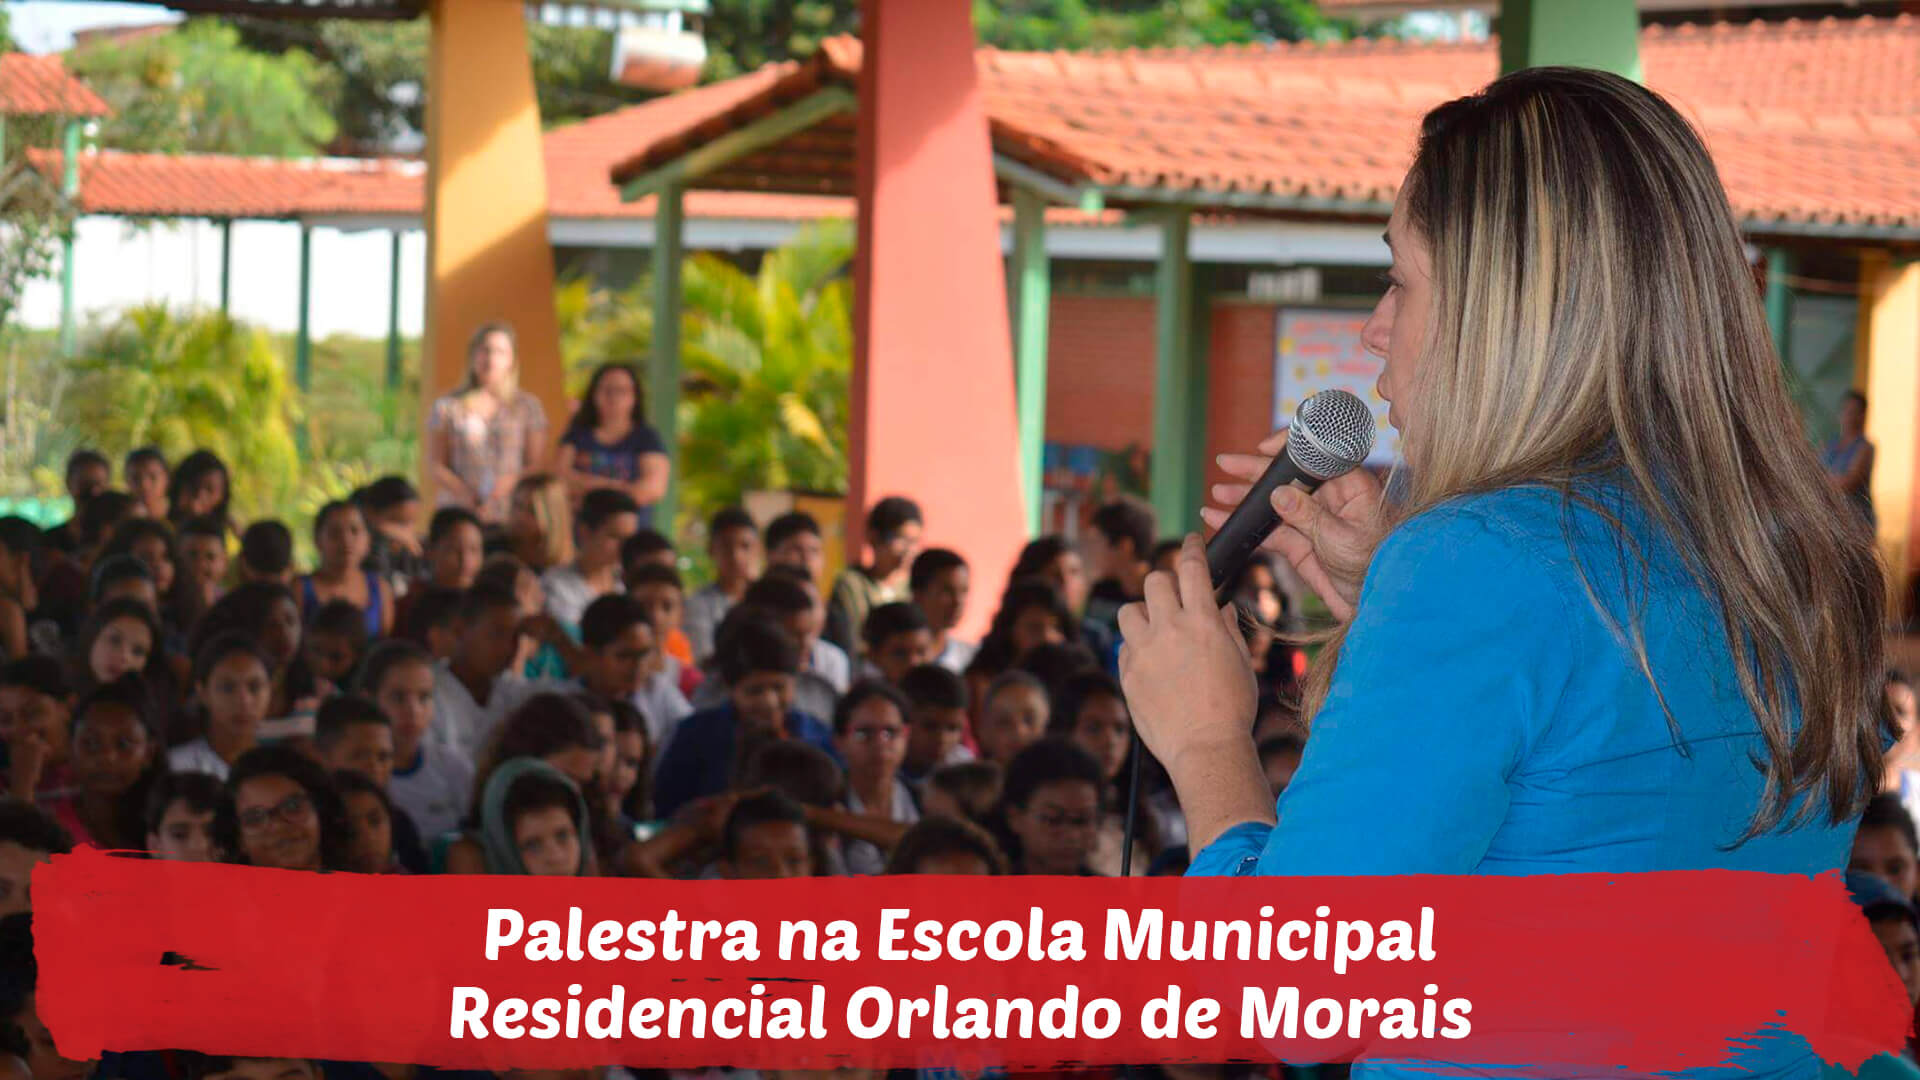 Palestra na Escola Municipal Residencial Orlando De Morais, sobre o combate a violência contra crianças e adolescentes, a convite do professor Sandro Martins.